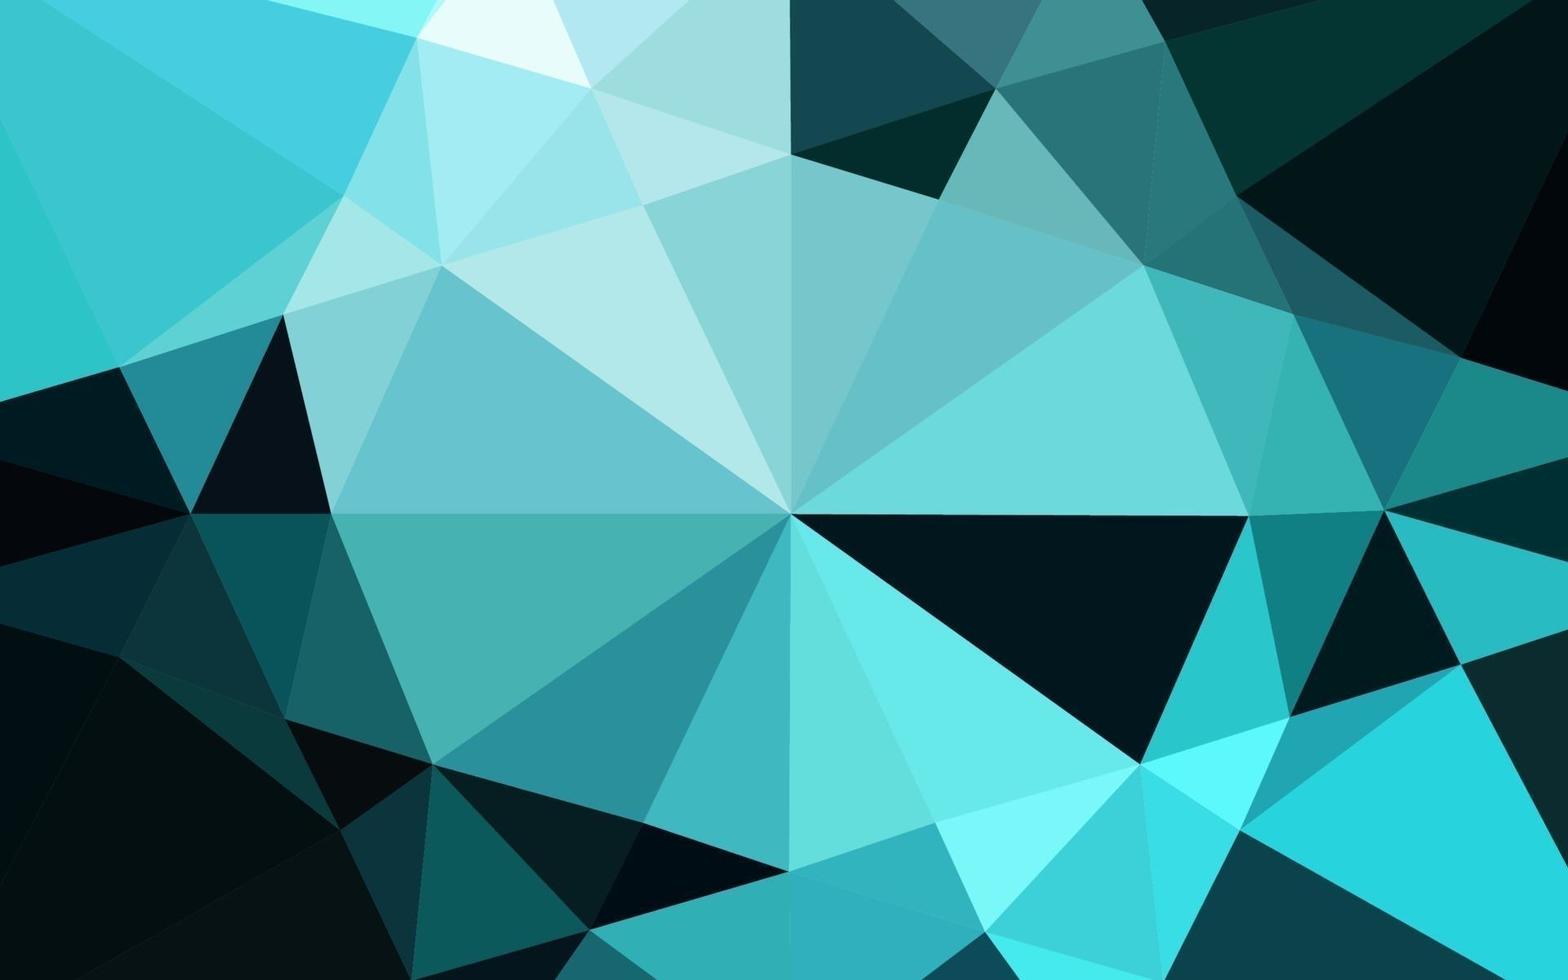 motif polygonal de vecteur bleu clair.